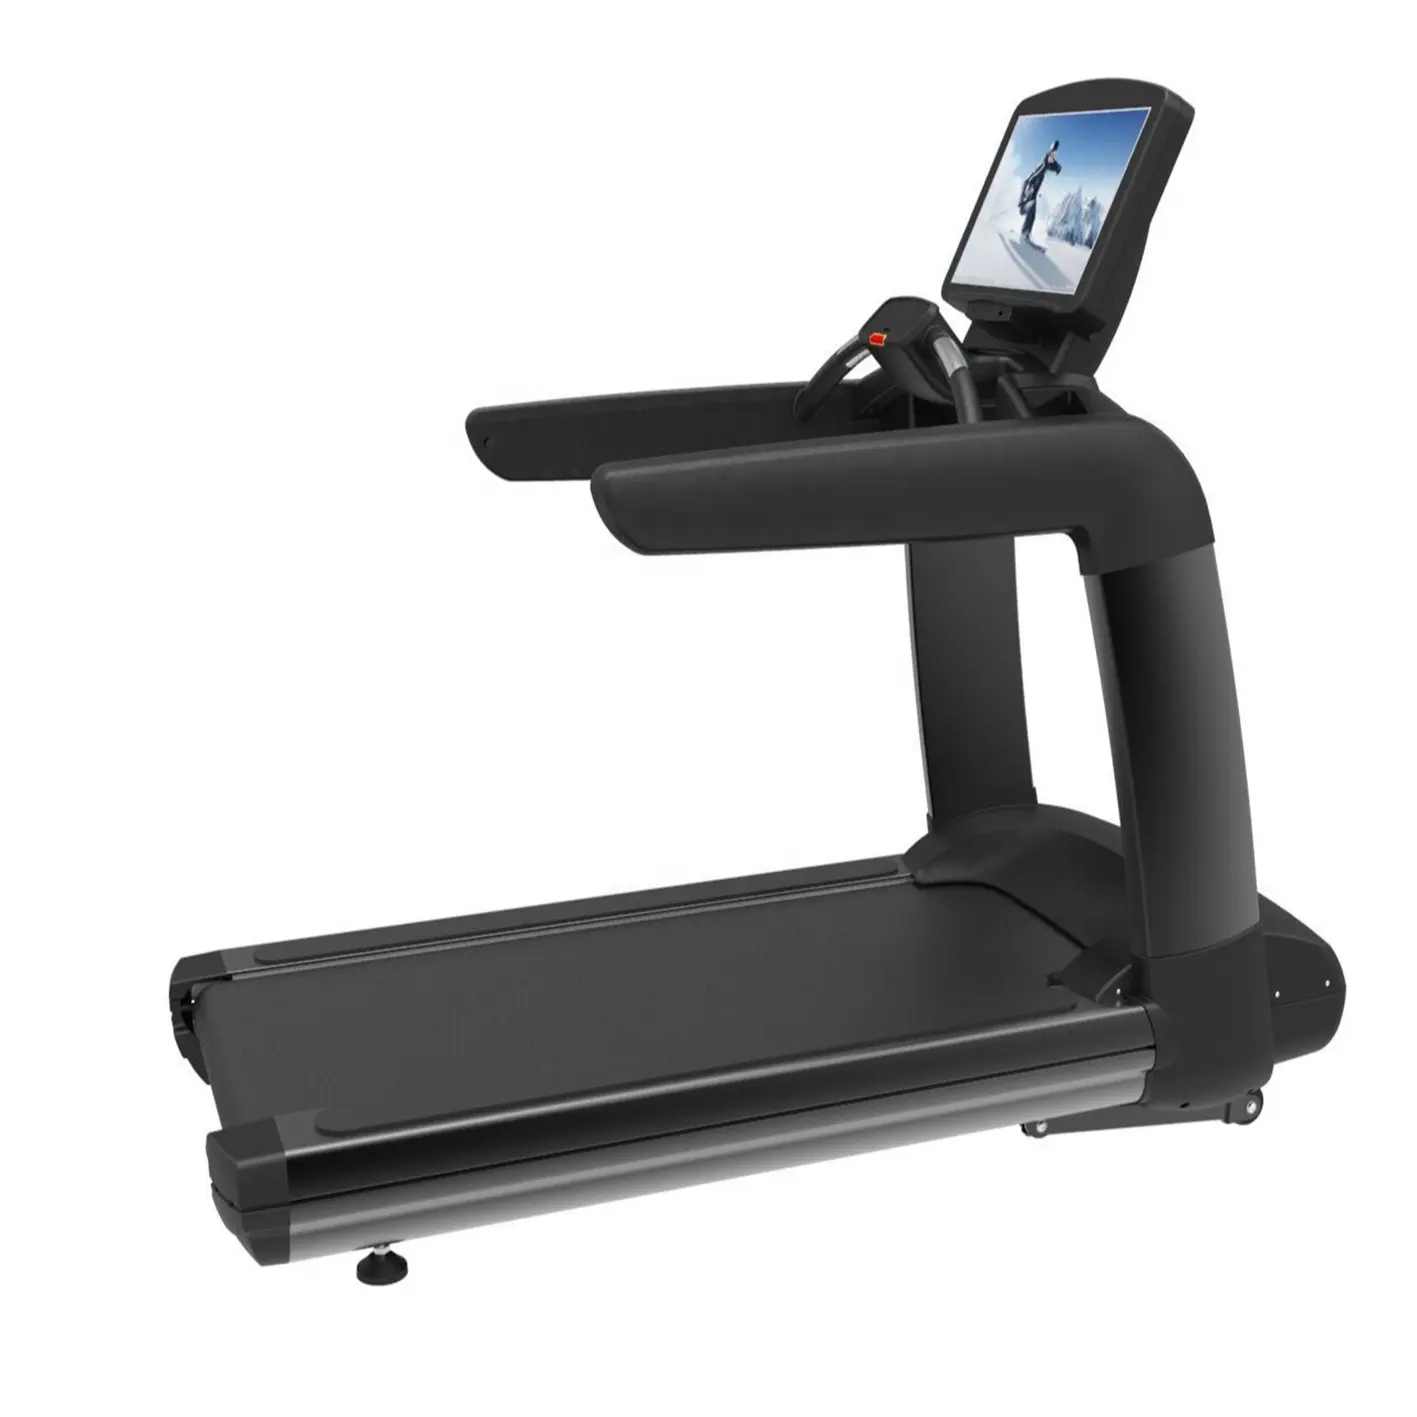 Cardio treadmill 체육관 기계 적당 훈련 장치 상업적인 디딜방아 JG-9500B 텔레비젼 터치스크린